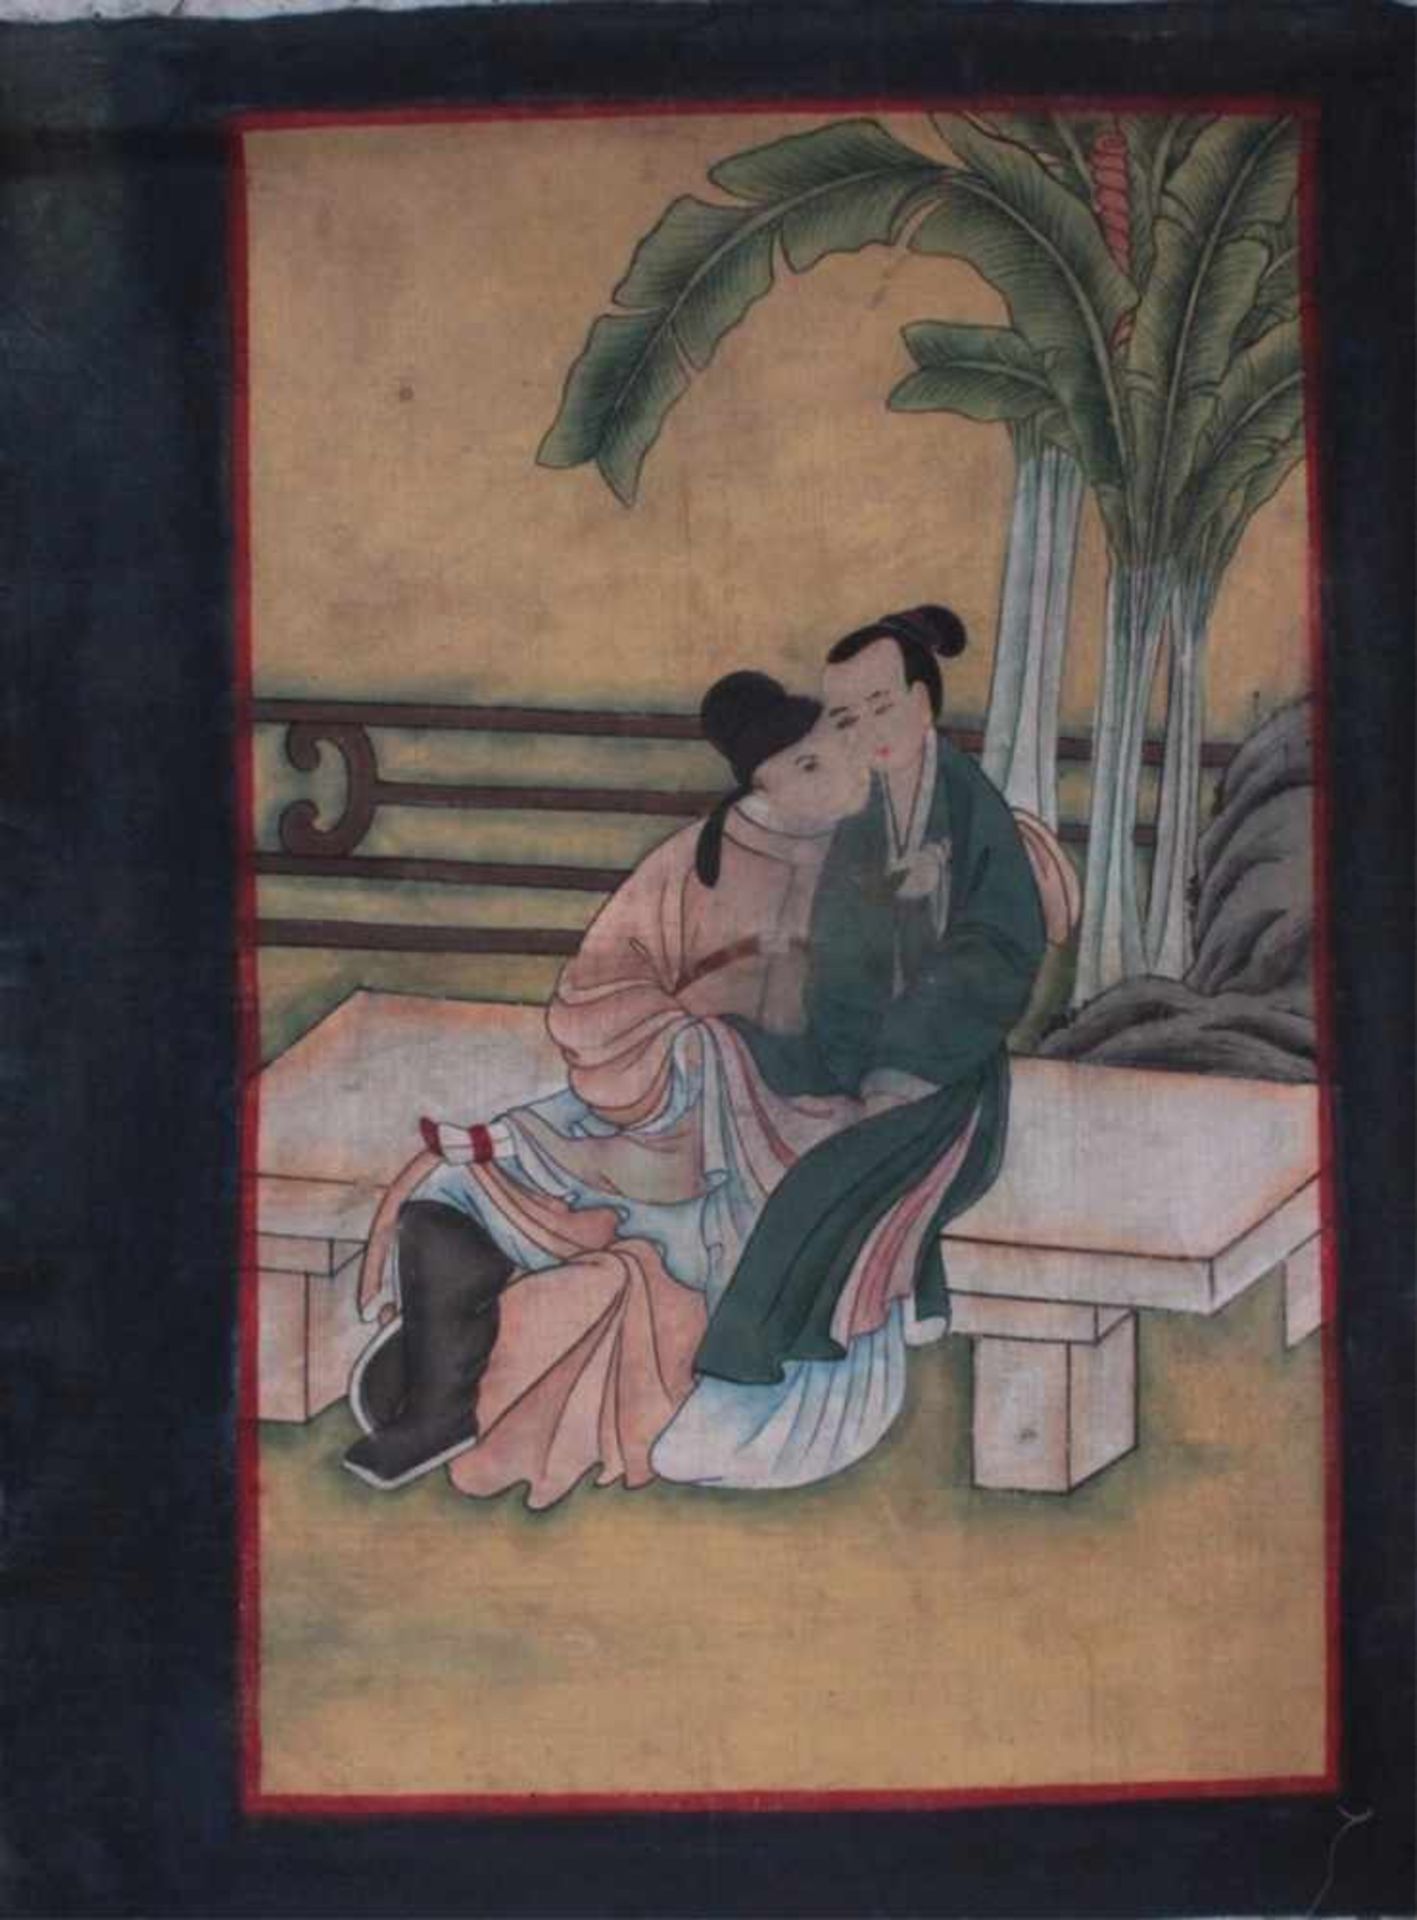 Japanische Malerei, Liebespaar um 1900Tusche auf Stoff, ca. 66 x 50 cm